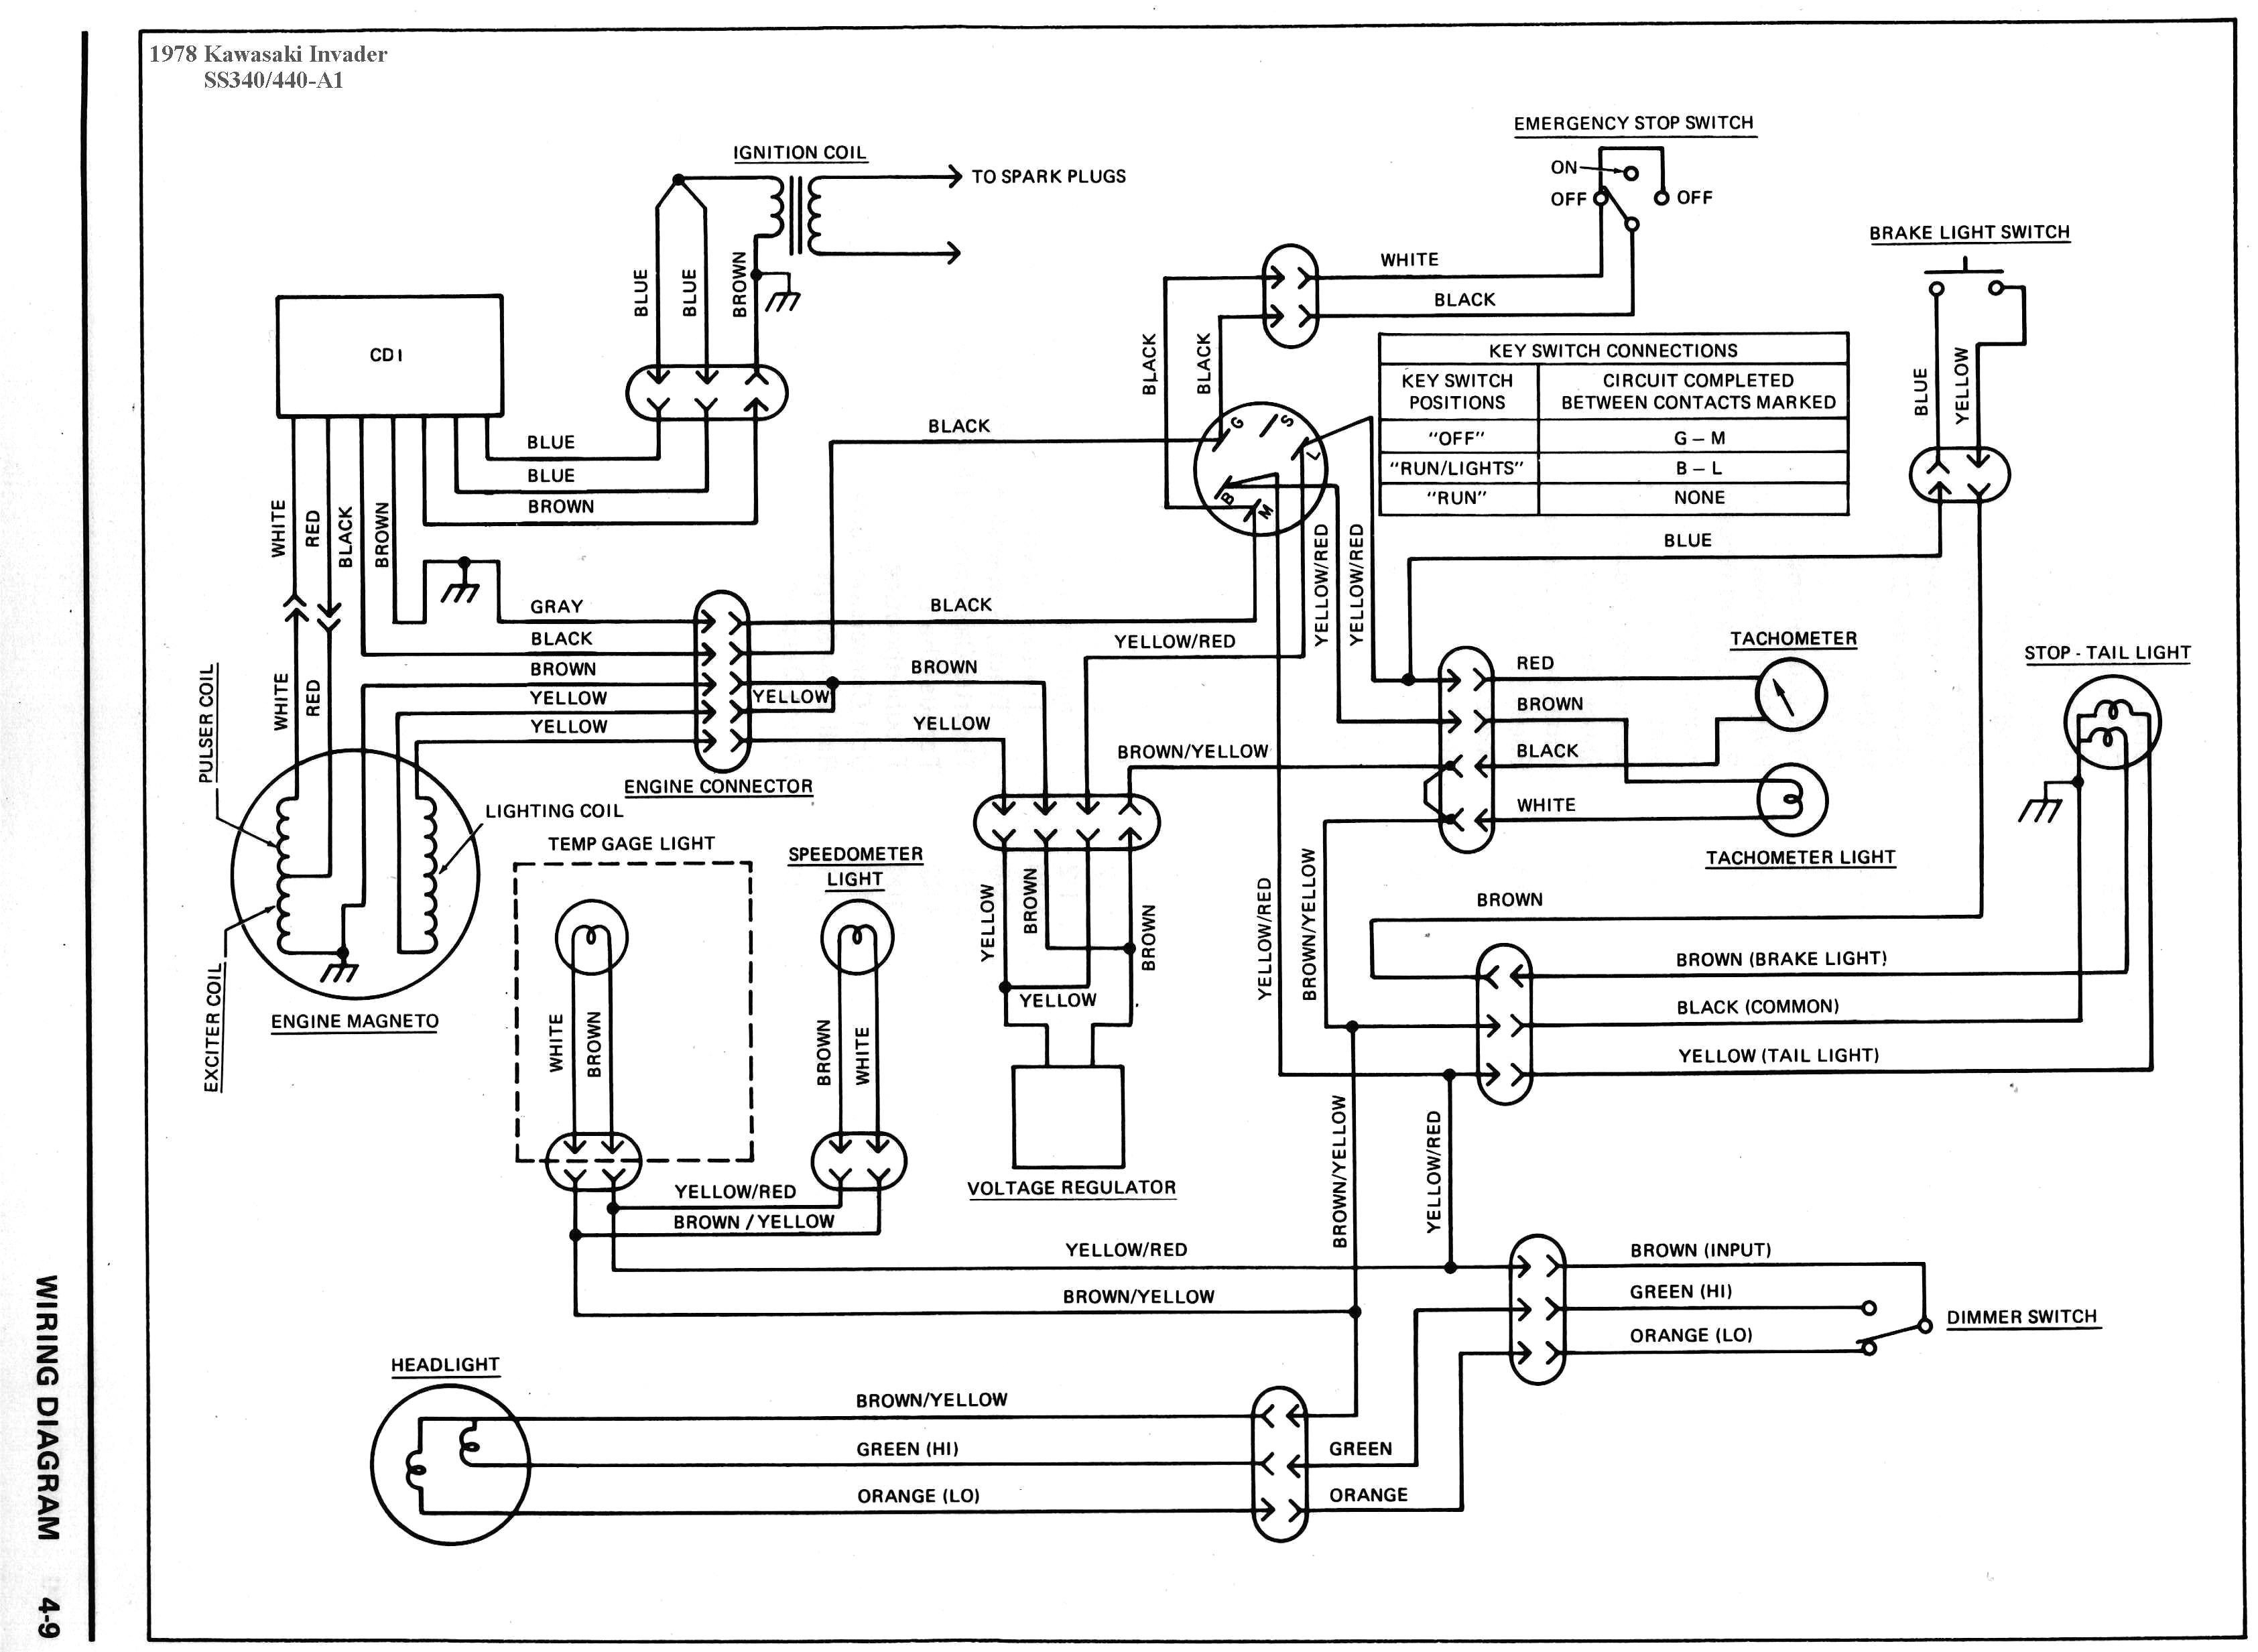 Kawasaki 220 Wiring Diagram - Wiring Diagram Data - Kawasaki Bayou 220 Wiring Diagram